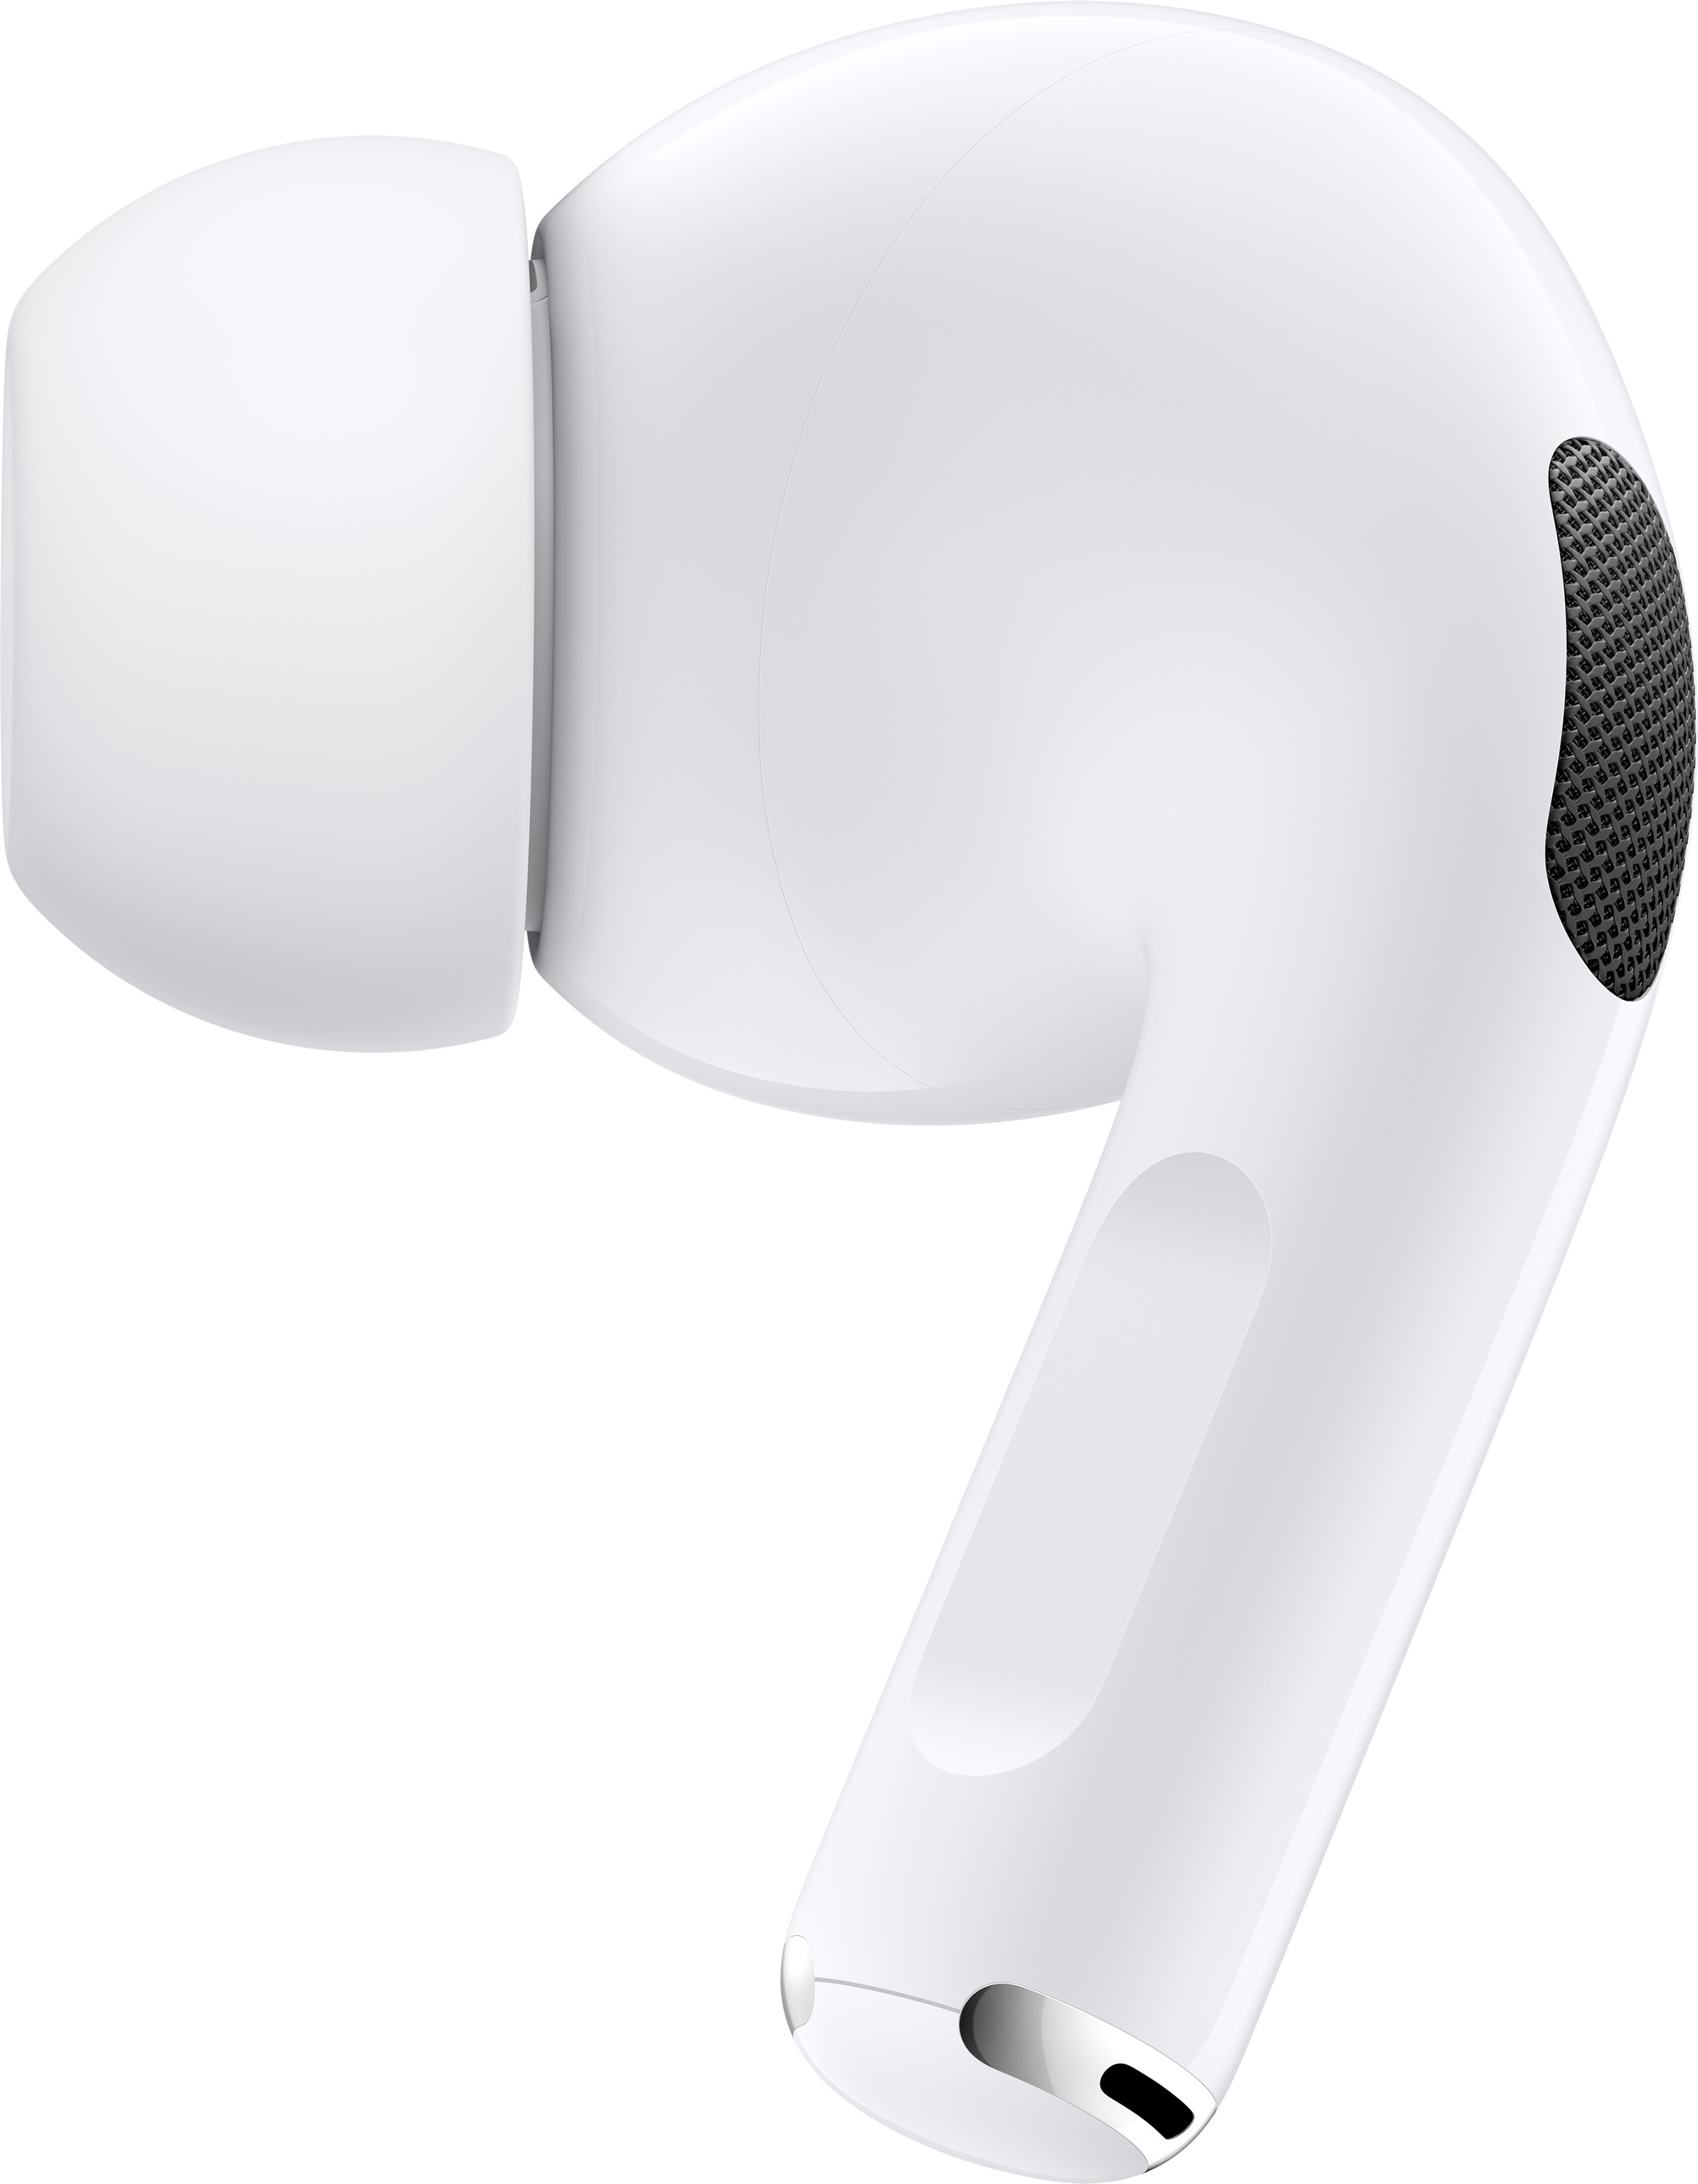 Apple AirPods Pro -nappikuulokkeet, MLWK3 – Verkkokauppa.com